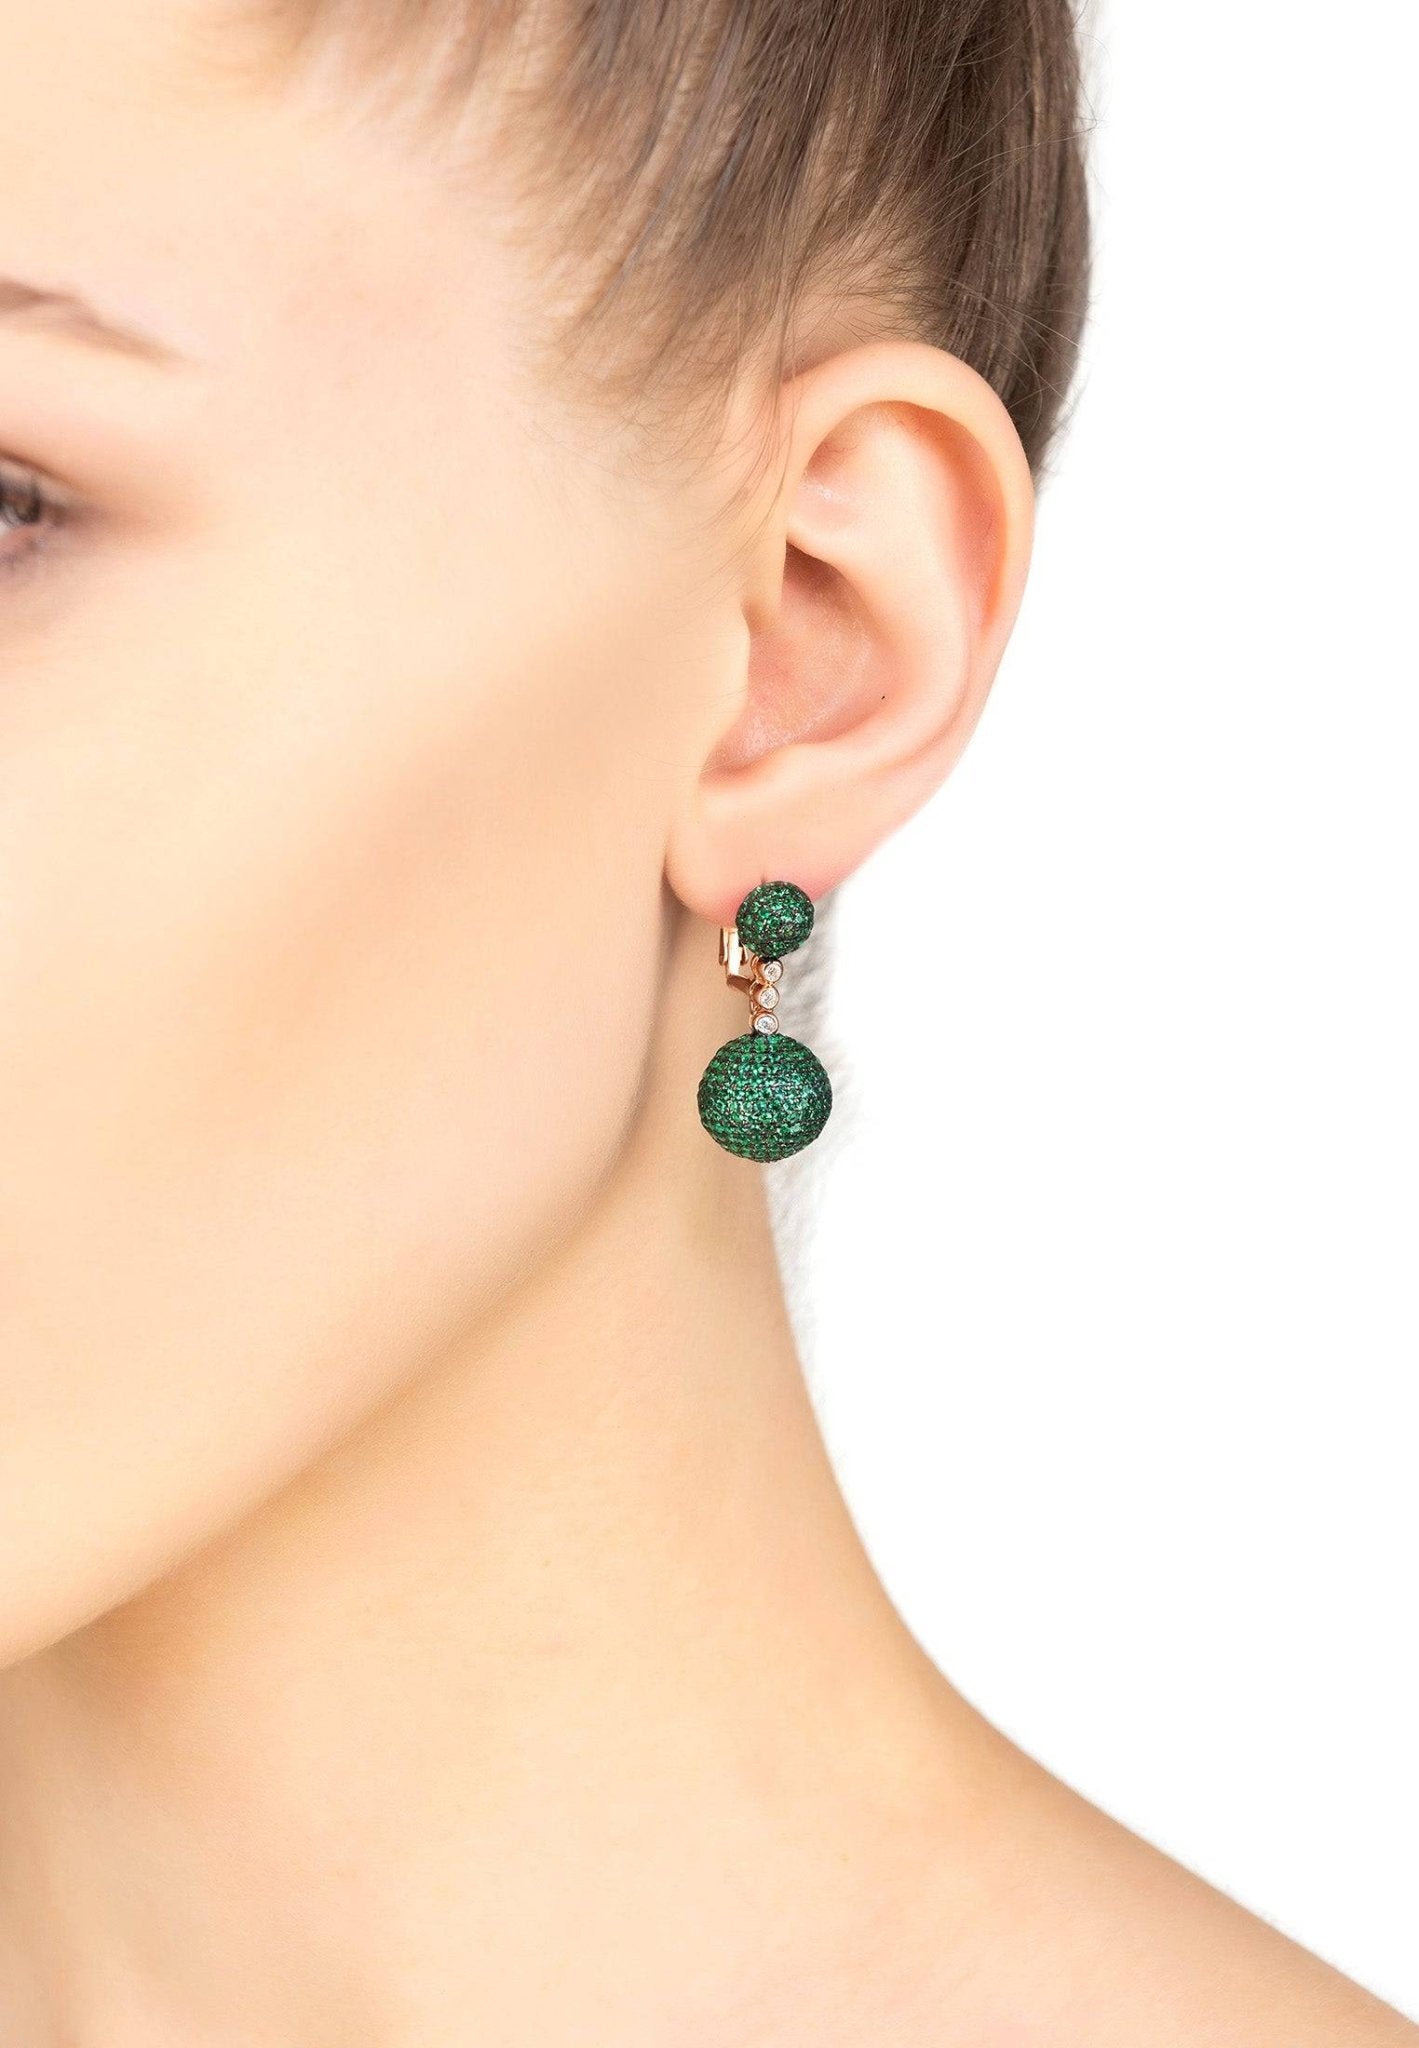 Monaco Sphere Drop Earrings Rosegold Emerald Green Cz - LATELITA Earrings